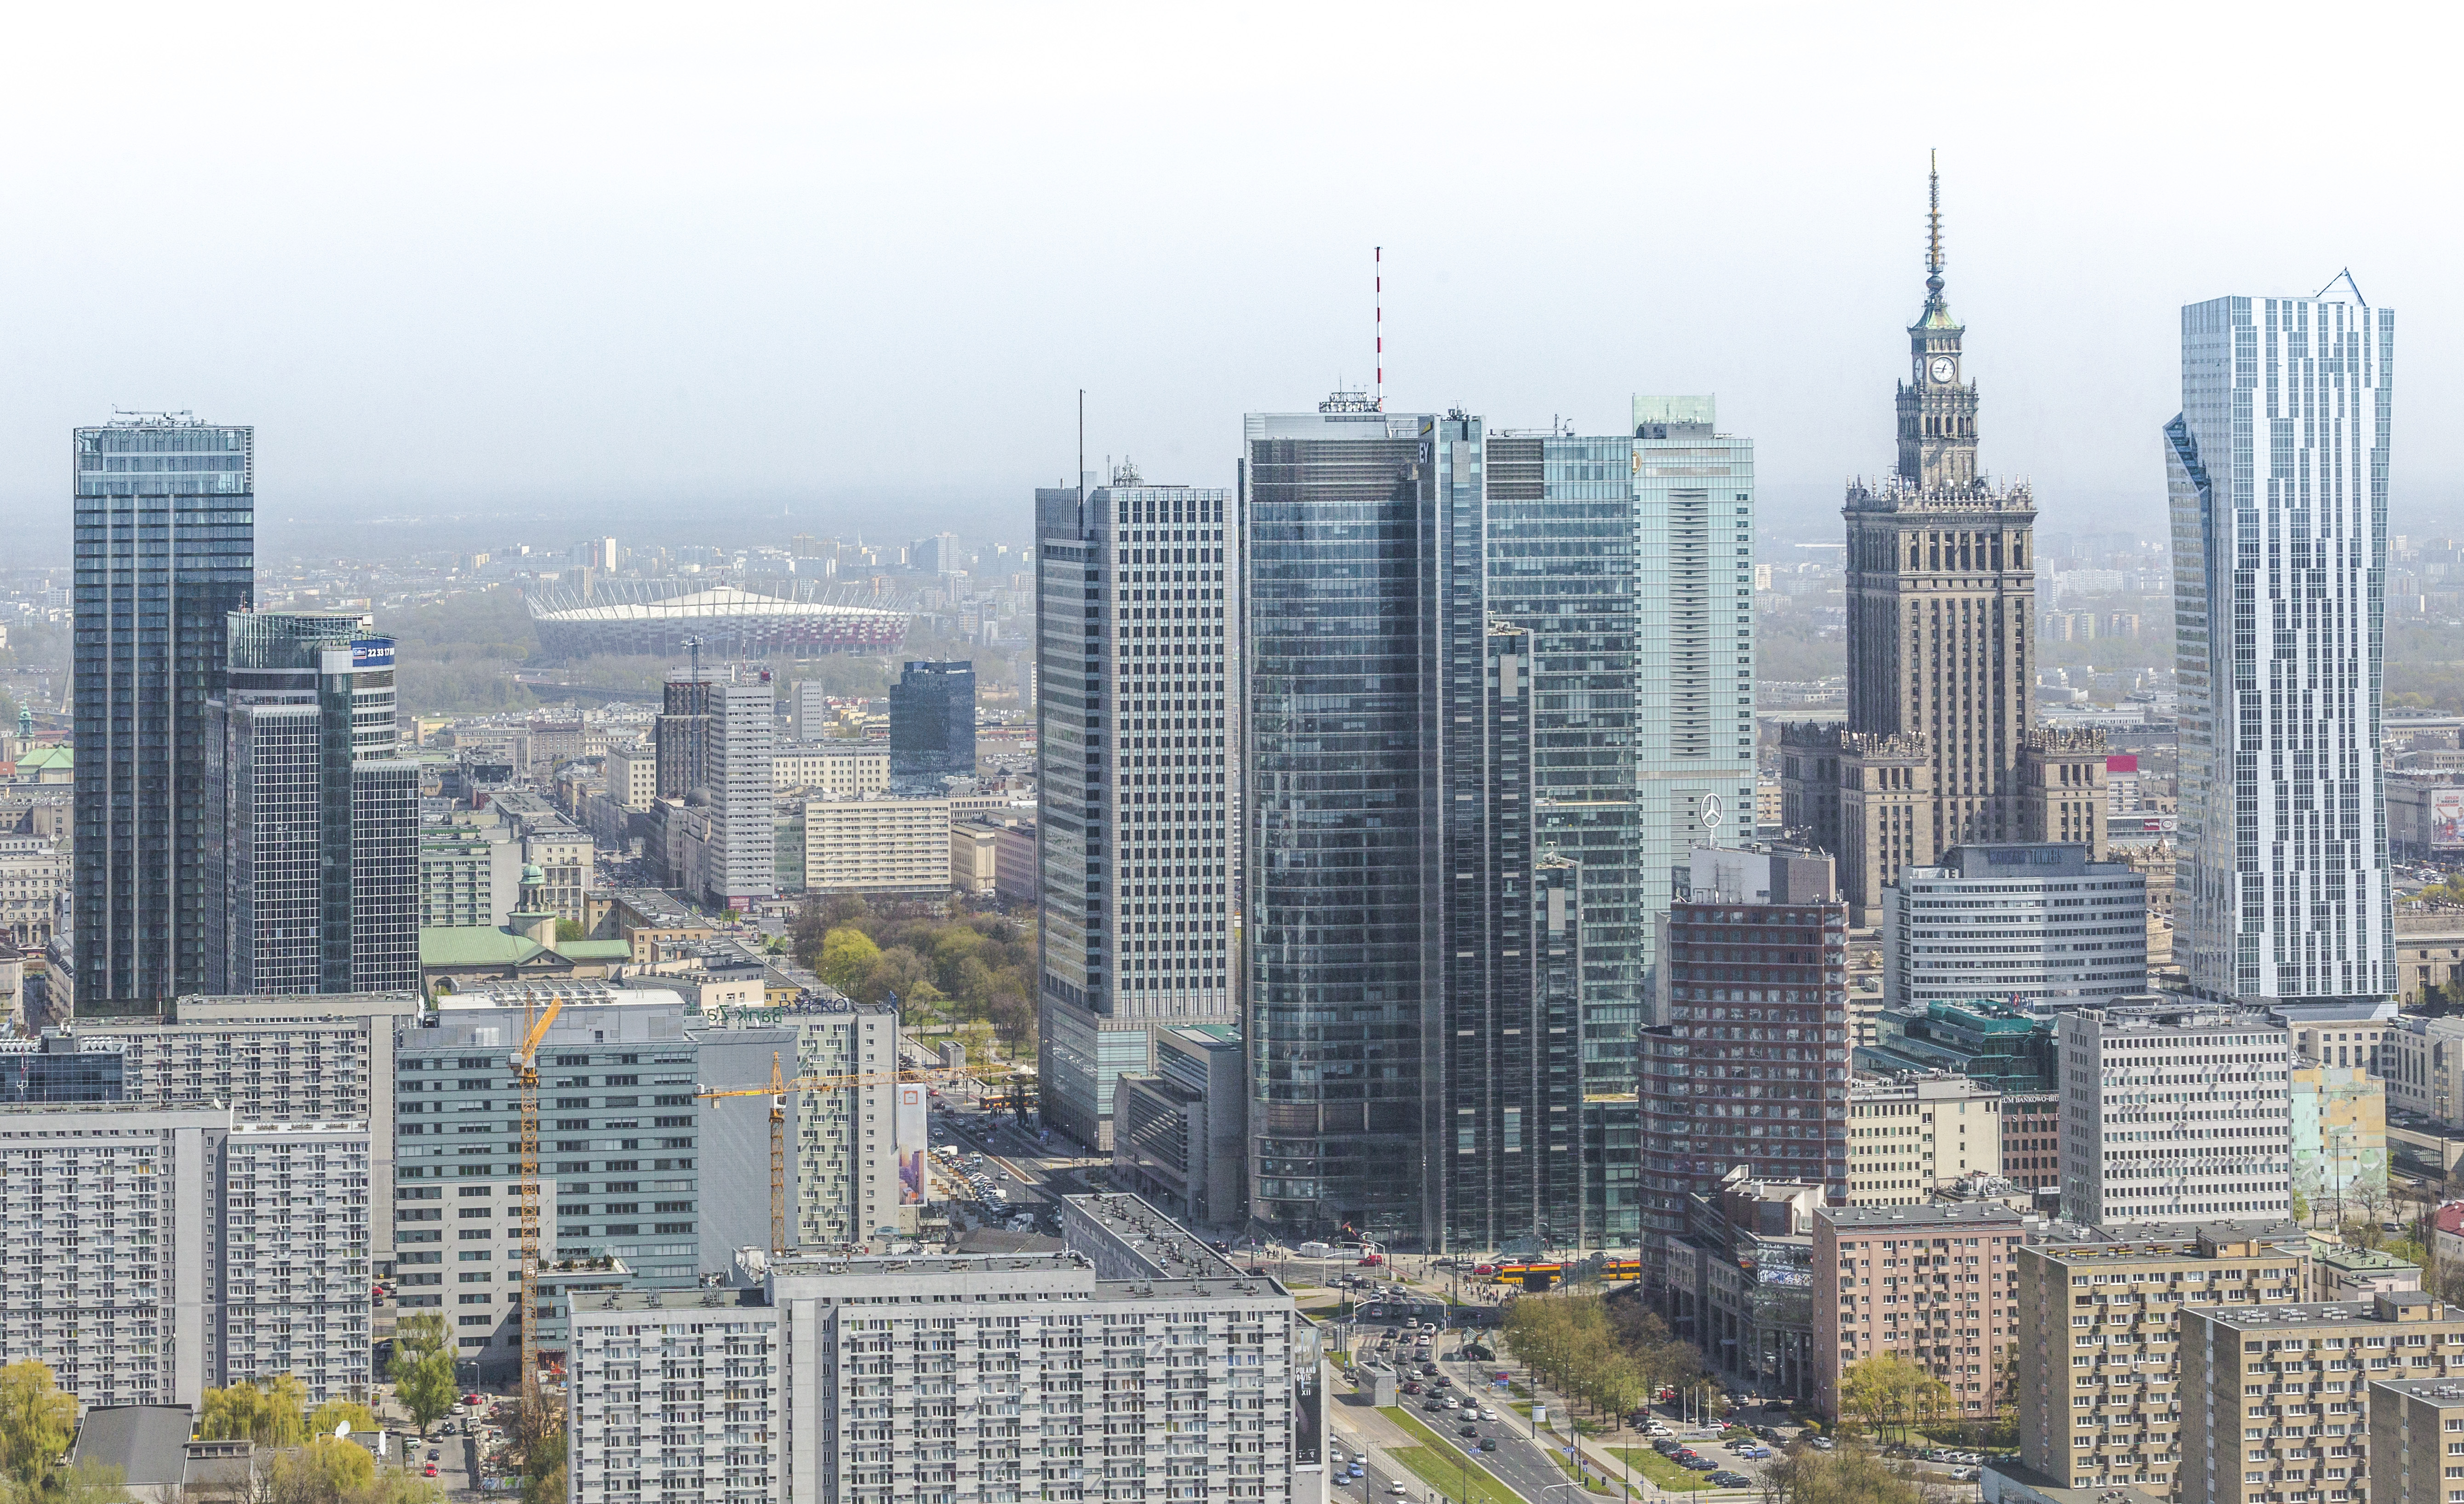 Najdroższe lokalizacje biurowe świata Ranking Panorama Warszawy 2015 Jankarol.com CBRE